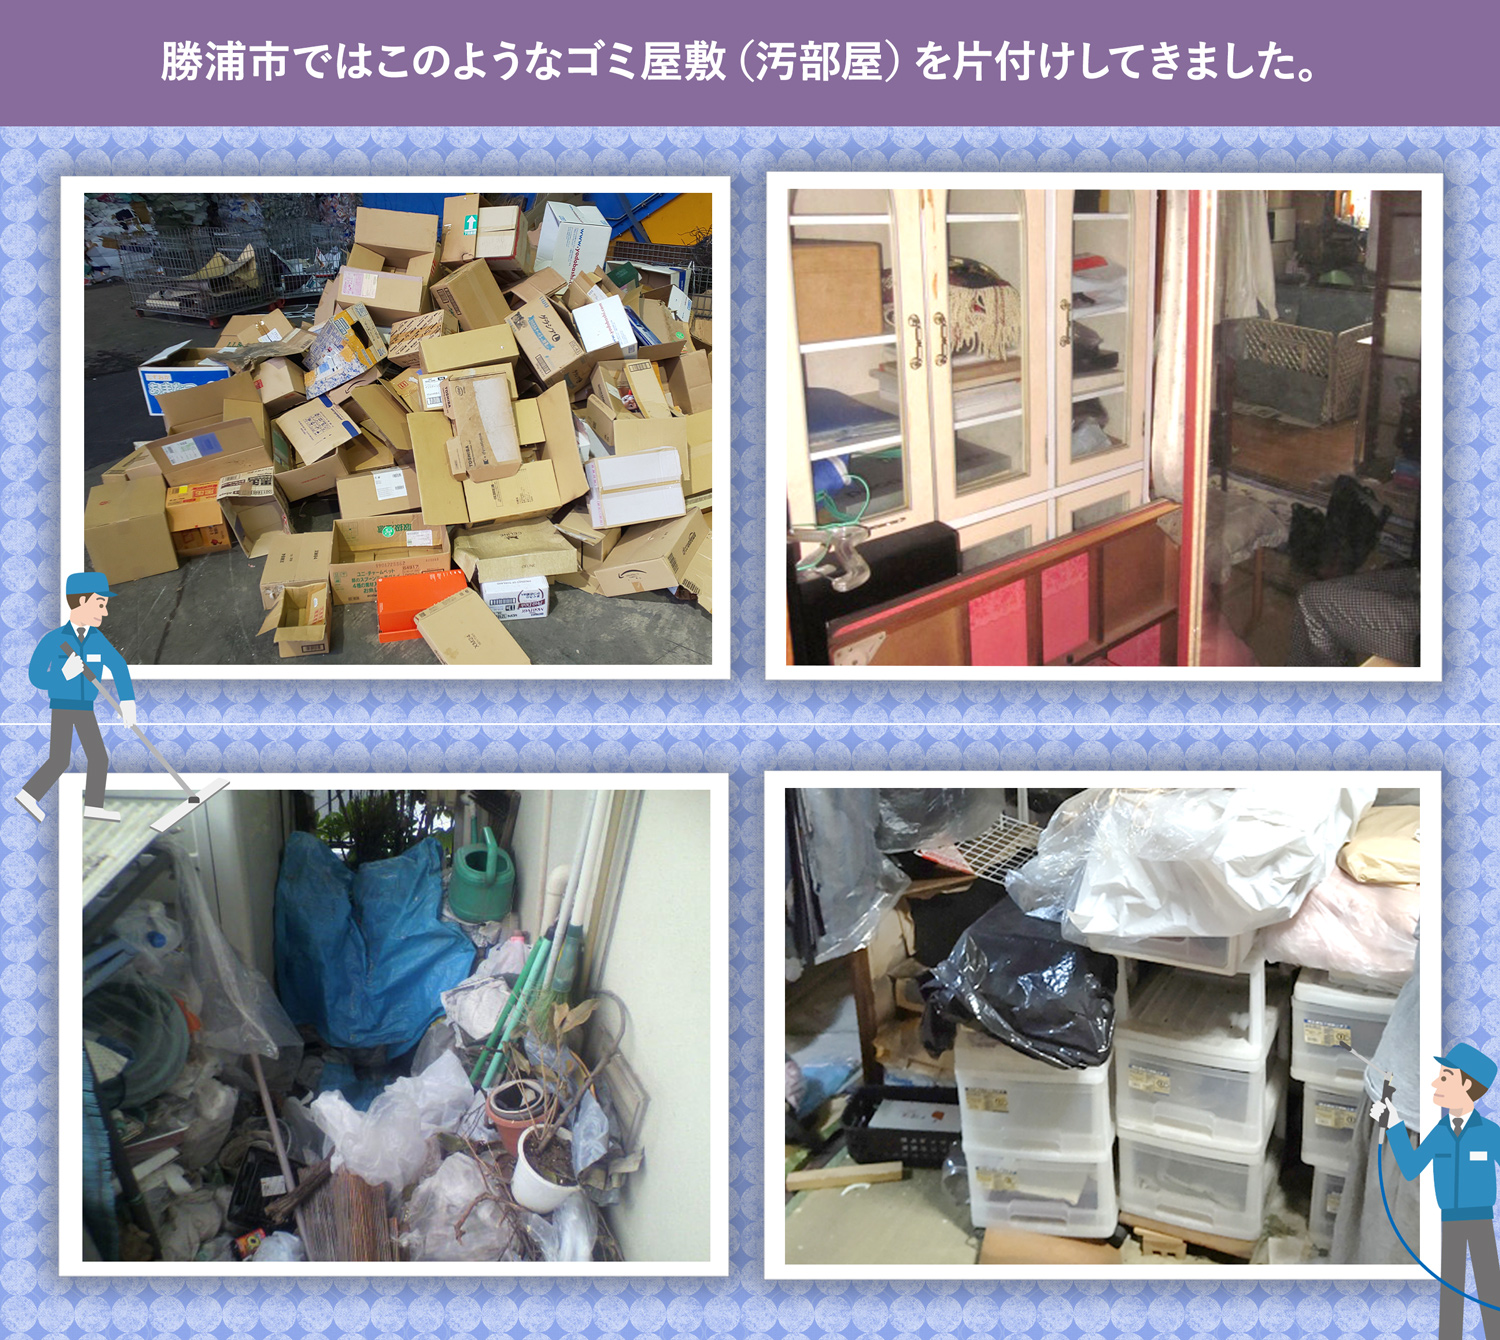 勝浦市で行ったで行ったごみ屋敷・汚部屋の片付けの一例